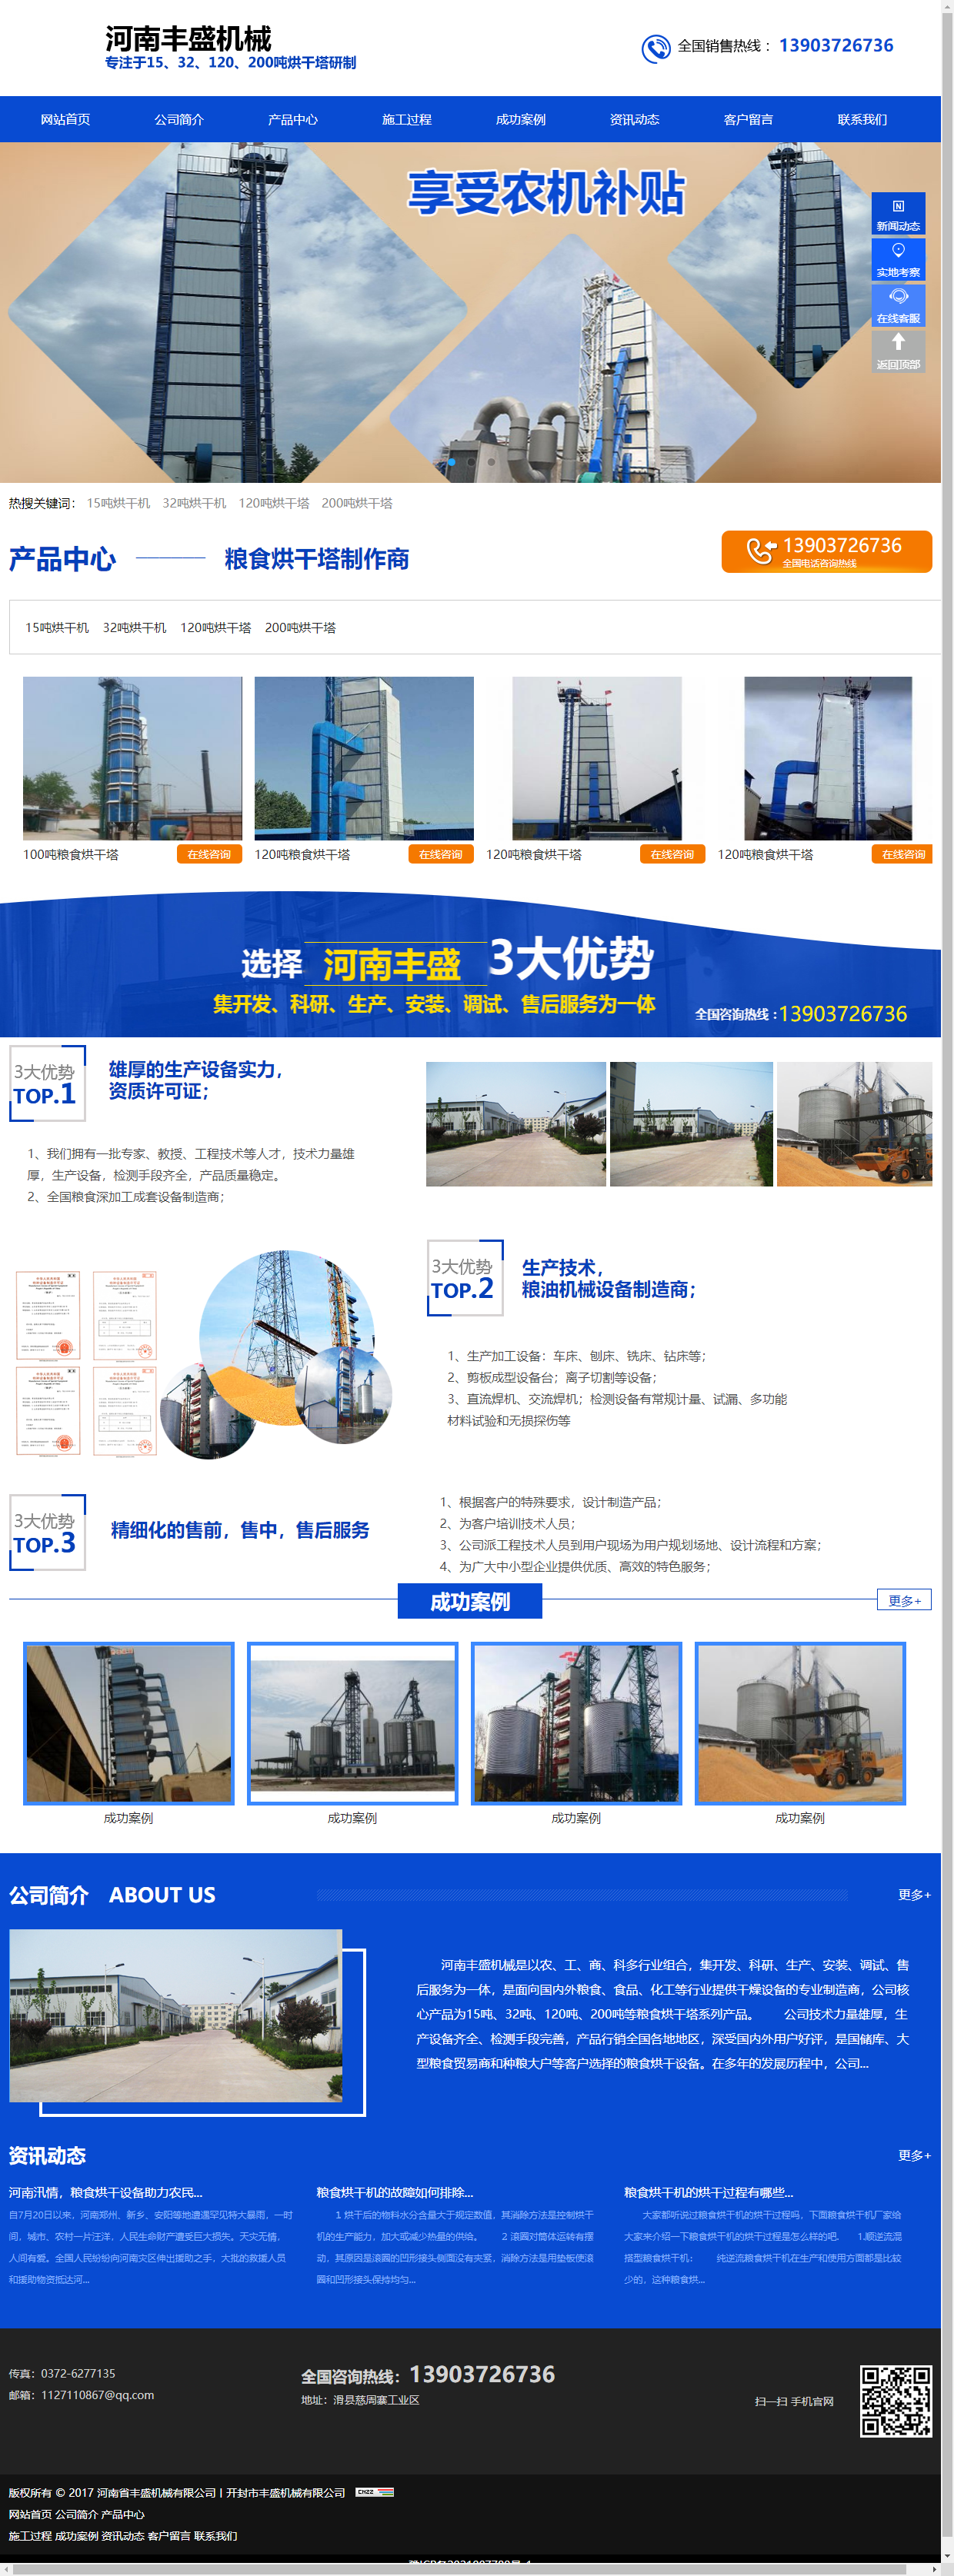 河南省丰盛机械有限公司网站案例